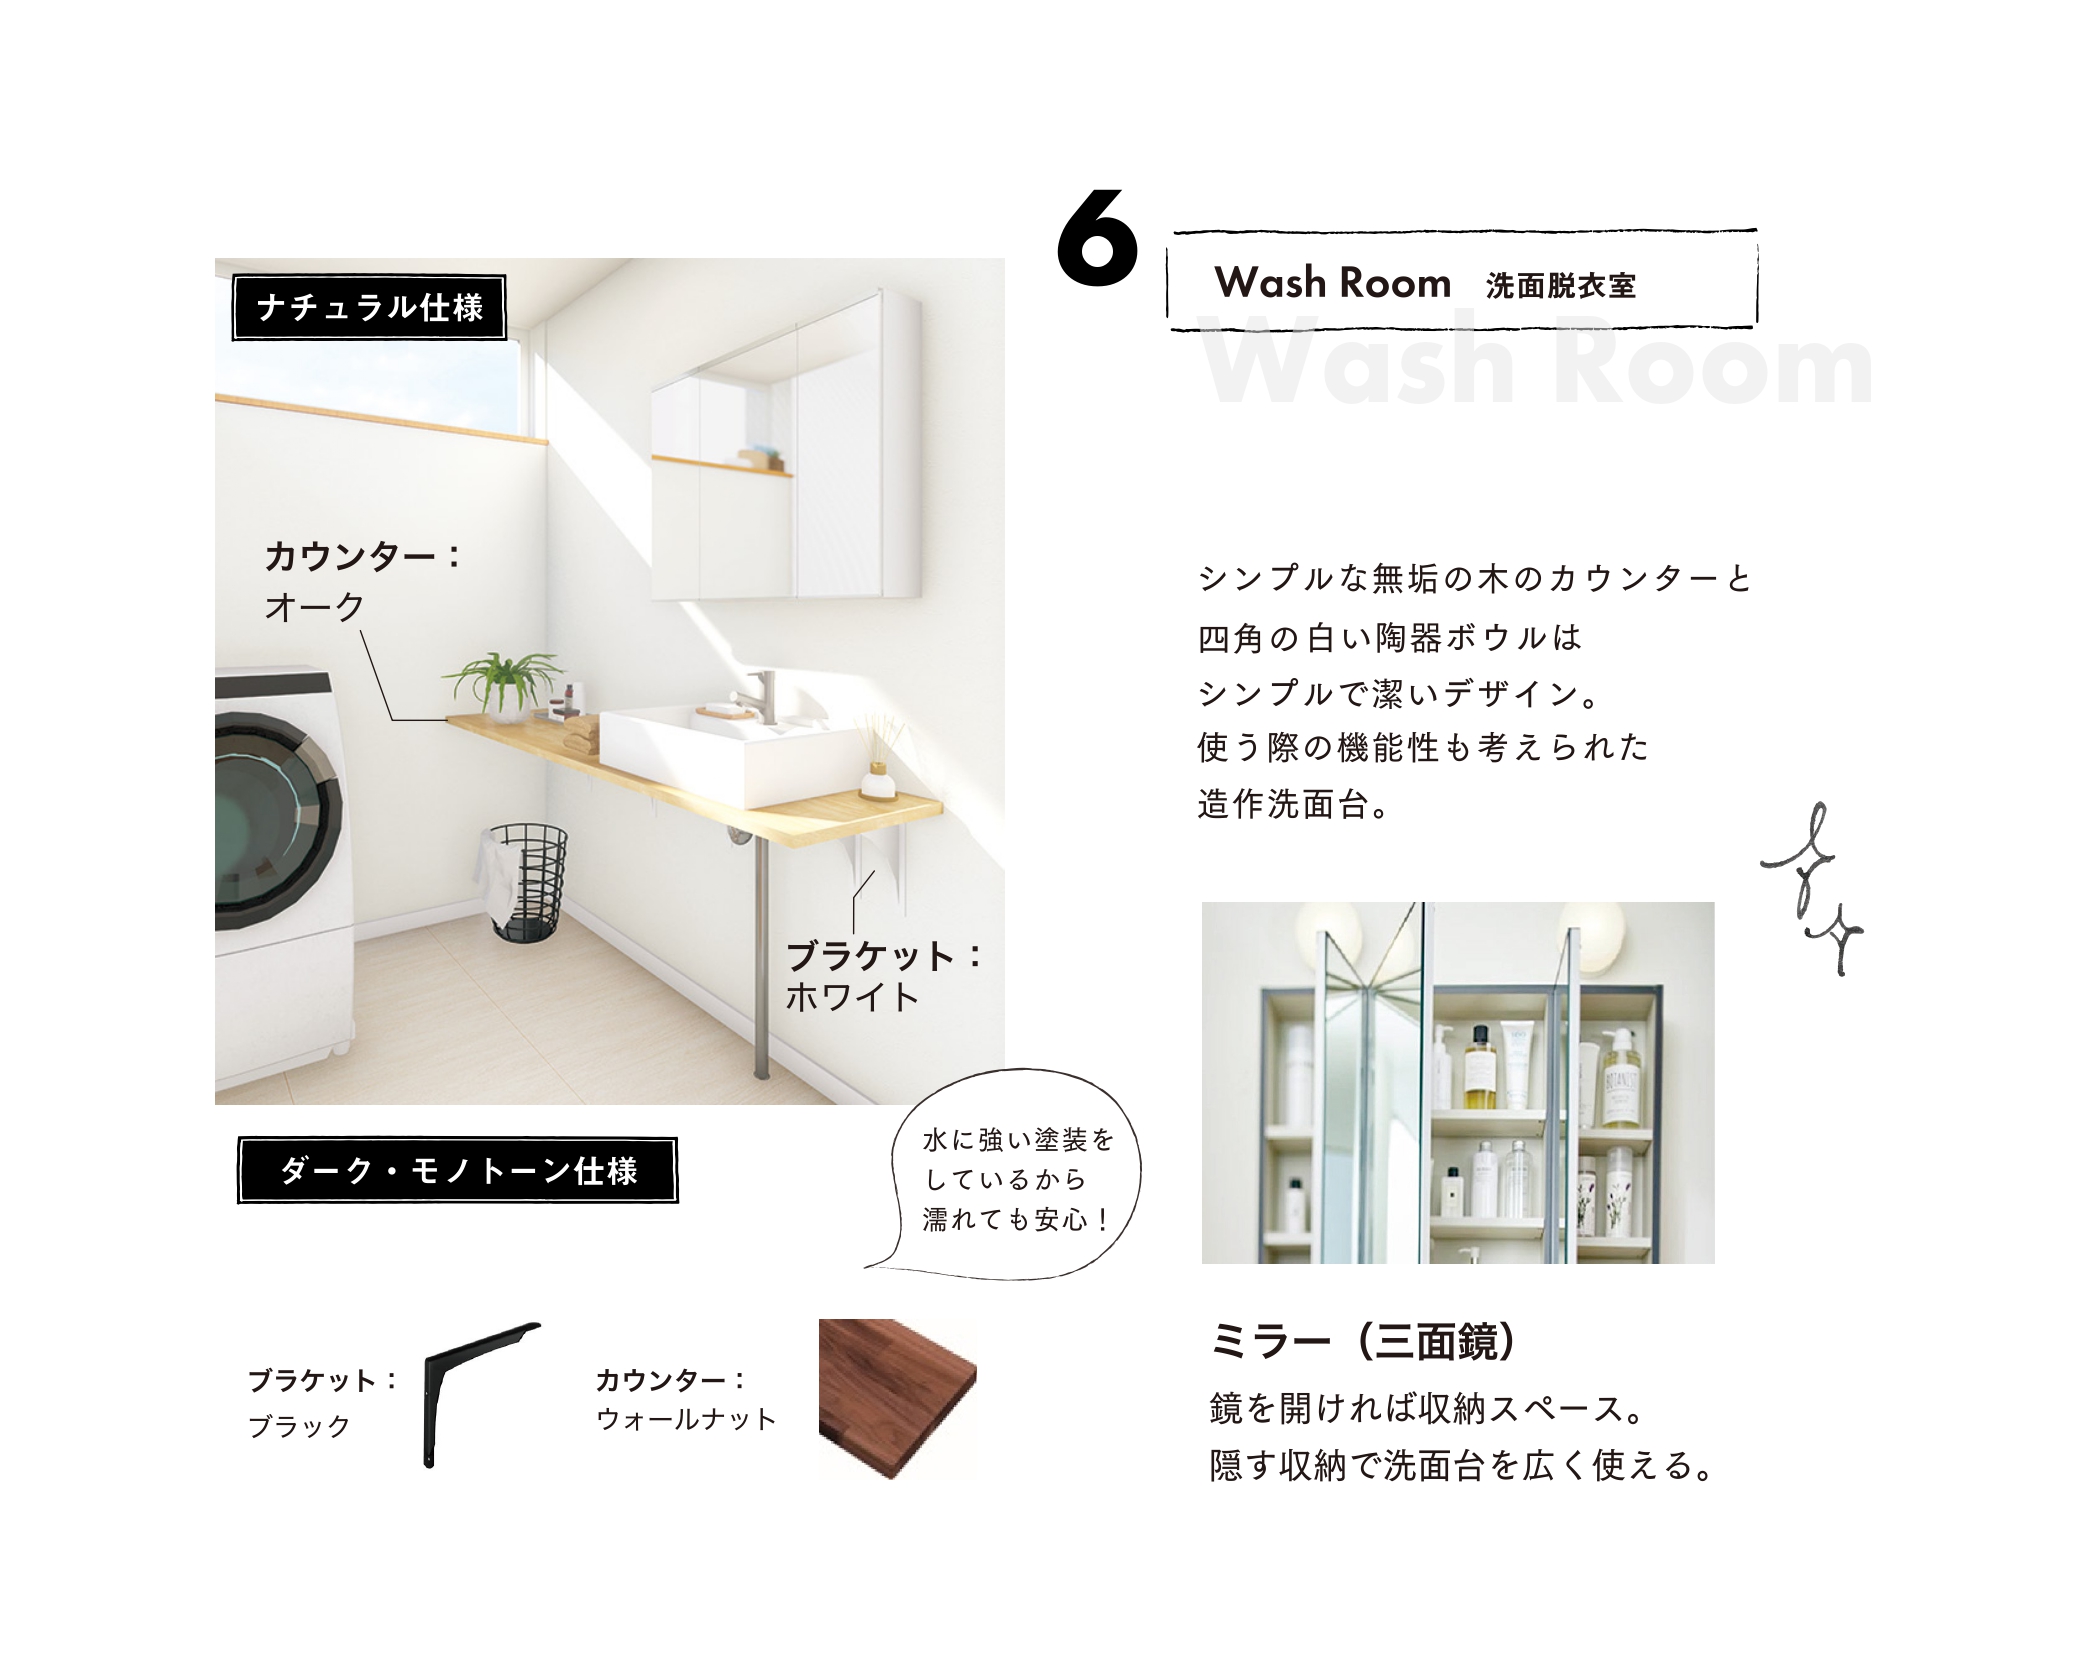 6洗面脱衣室 シンプルな無垢の木のカウンターと四角の白い陶器ボウルはシンプルで潔いデザイン。使う際の機能性も考えられた造作洗面台。